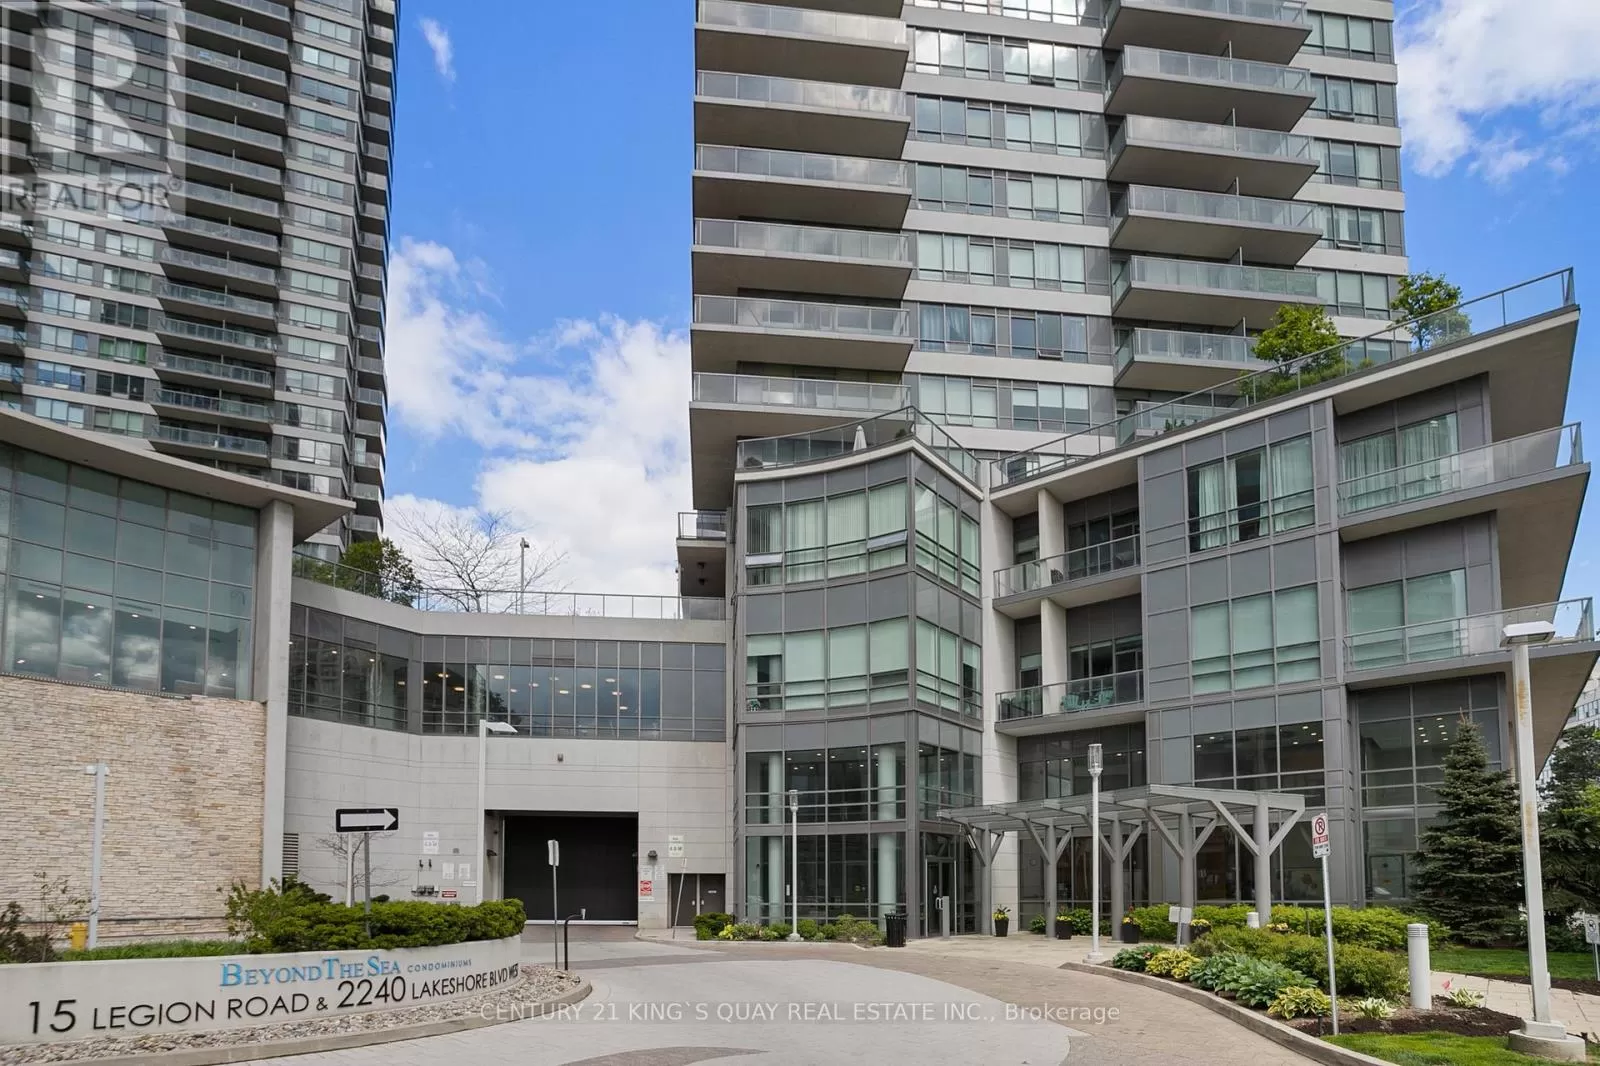 Apartment for rent: 2904 - 2240 Lake Shore Boulevard, Toronto, Ontario M8V 0A9